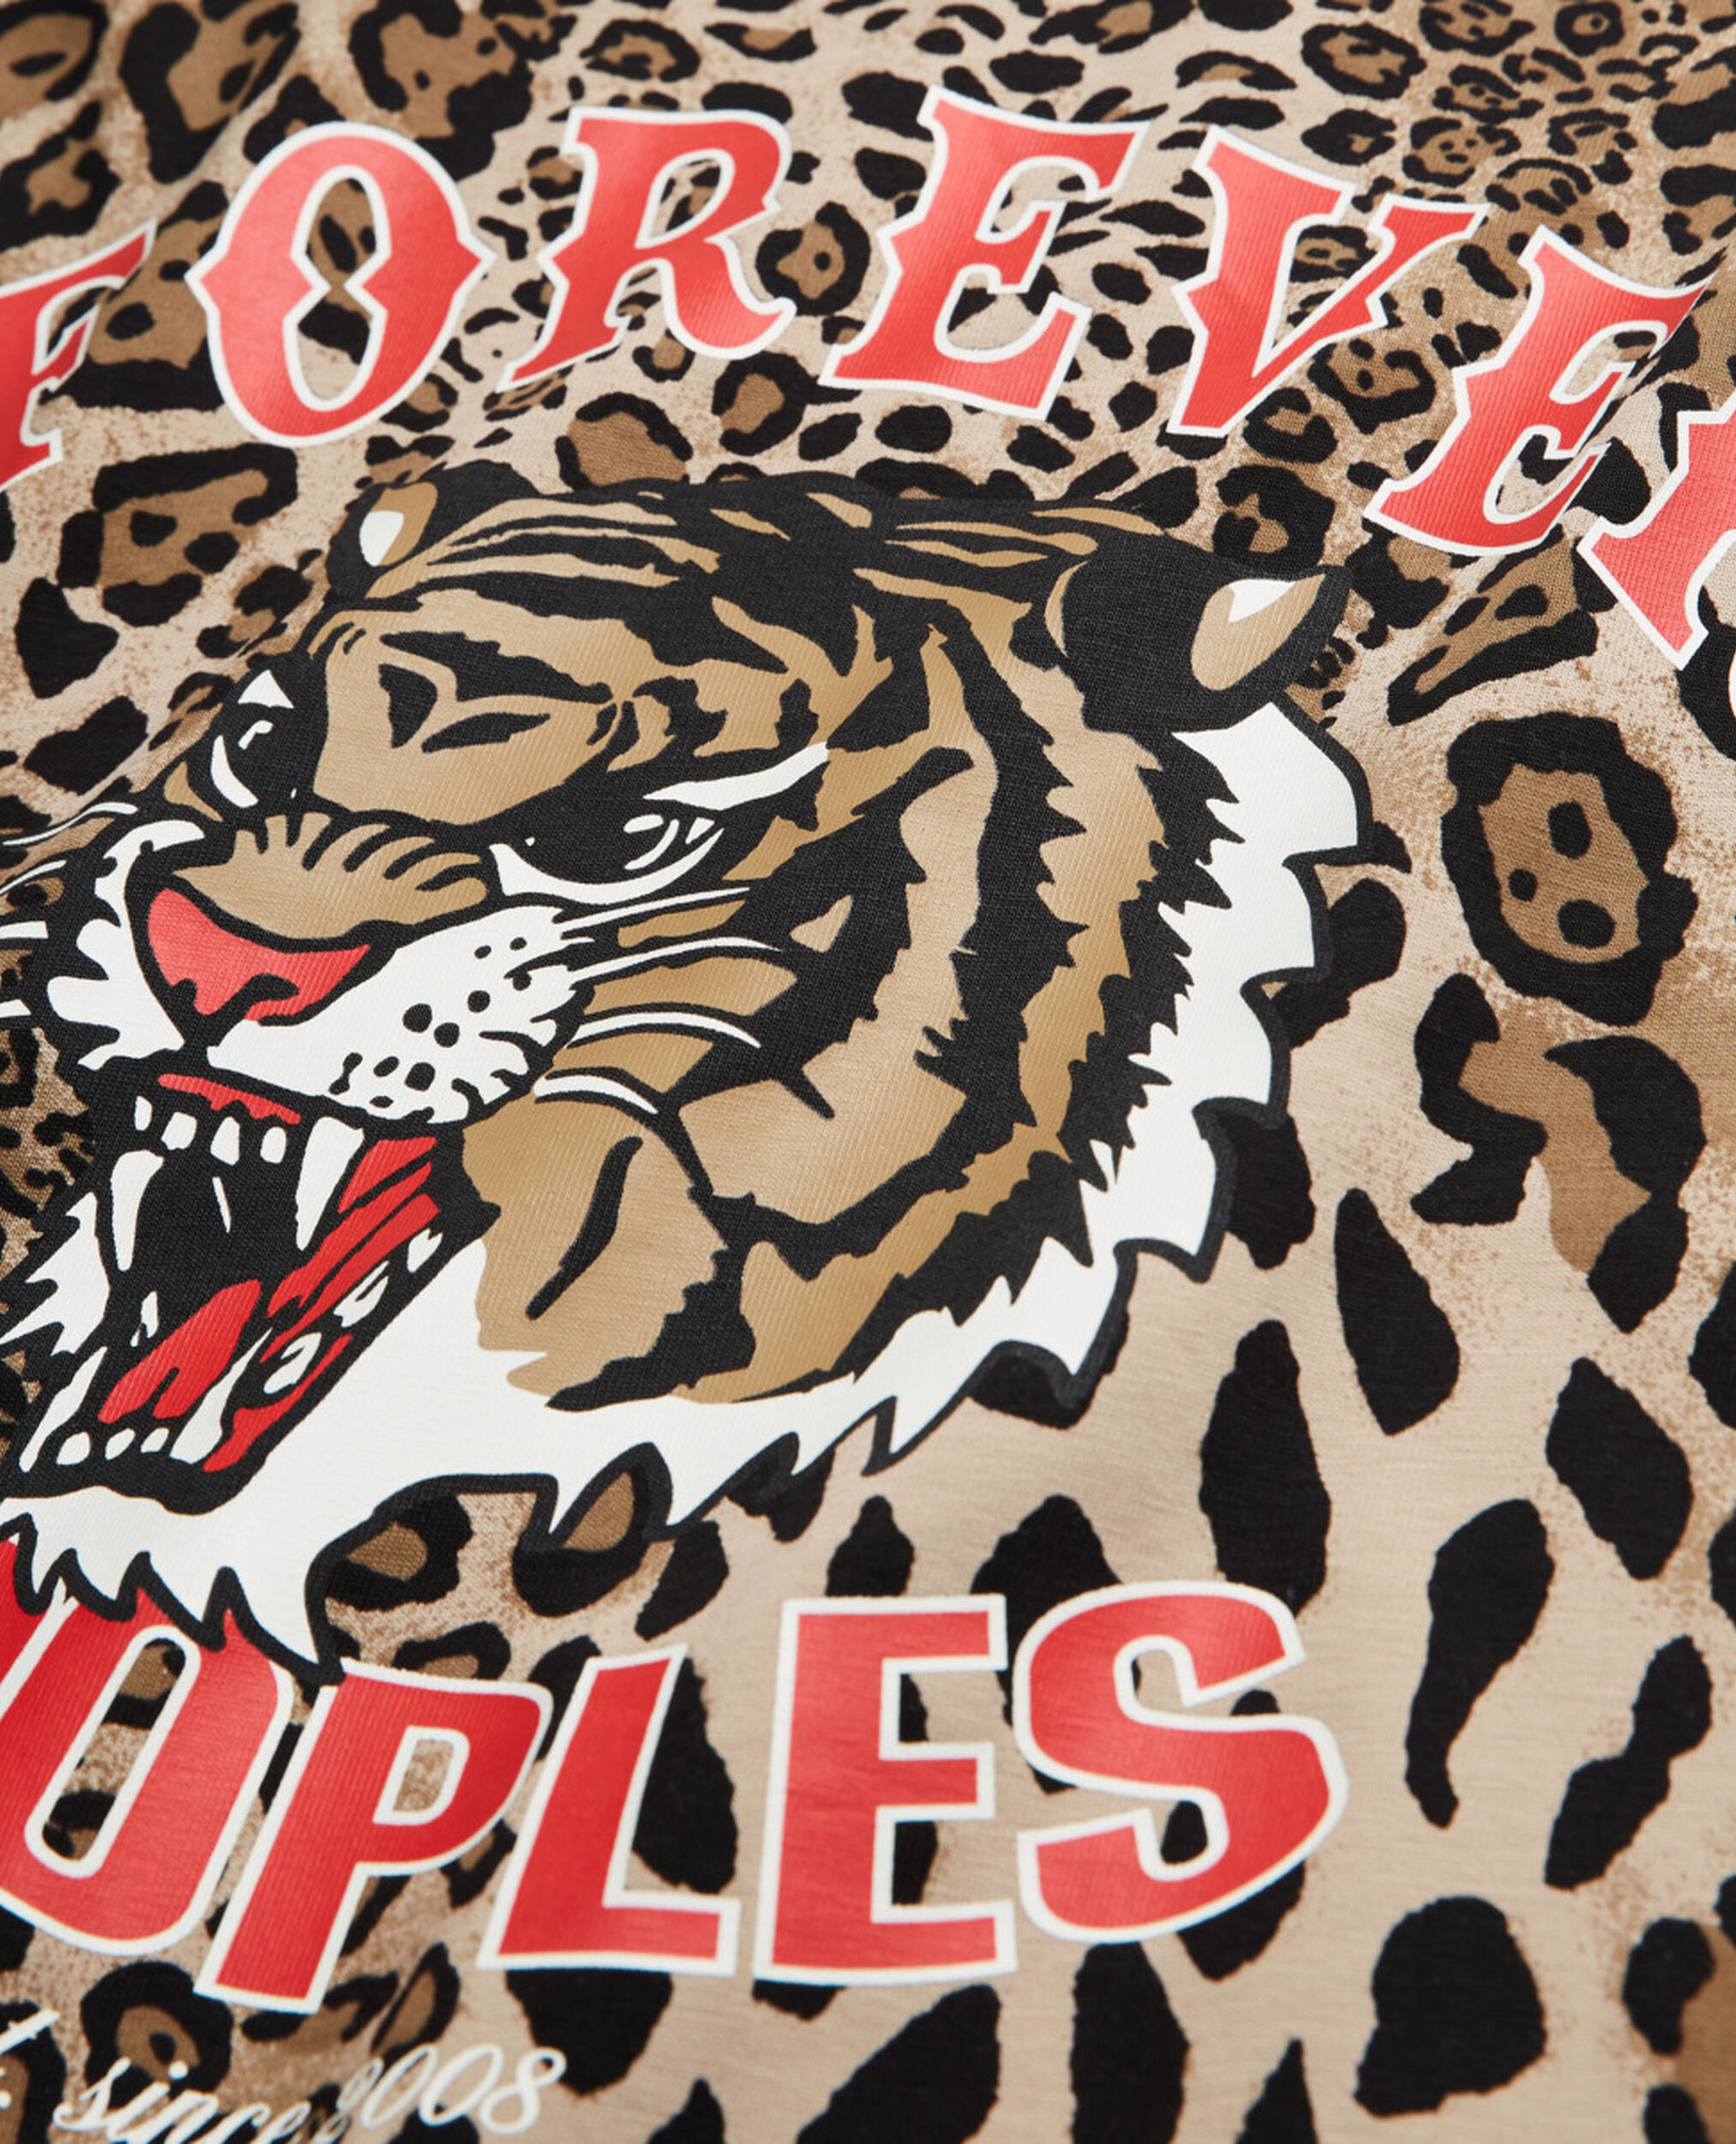 Camiseta algodón leopardo, LEOPARD, hi-res image number null